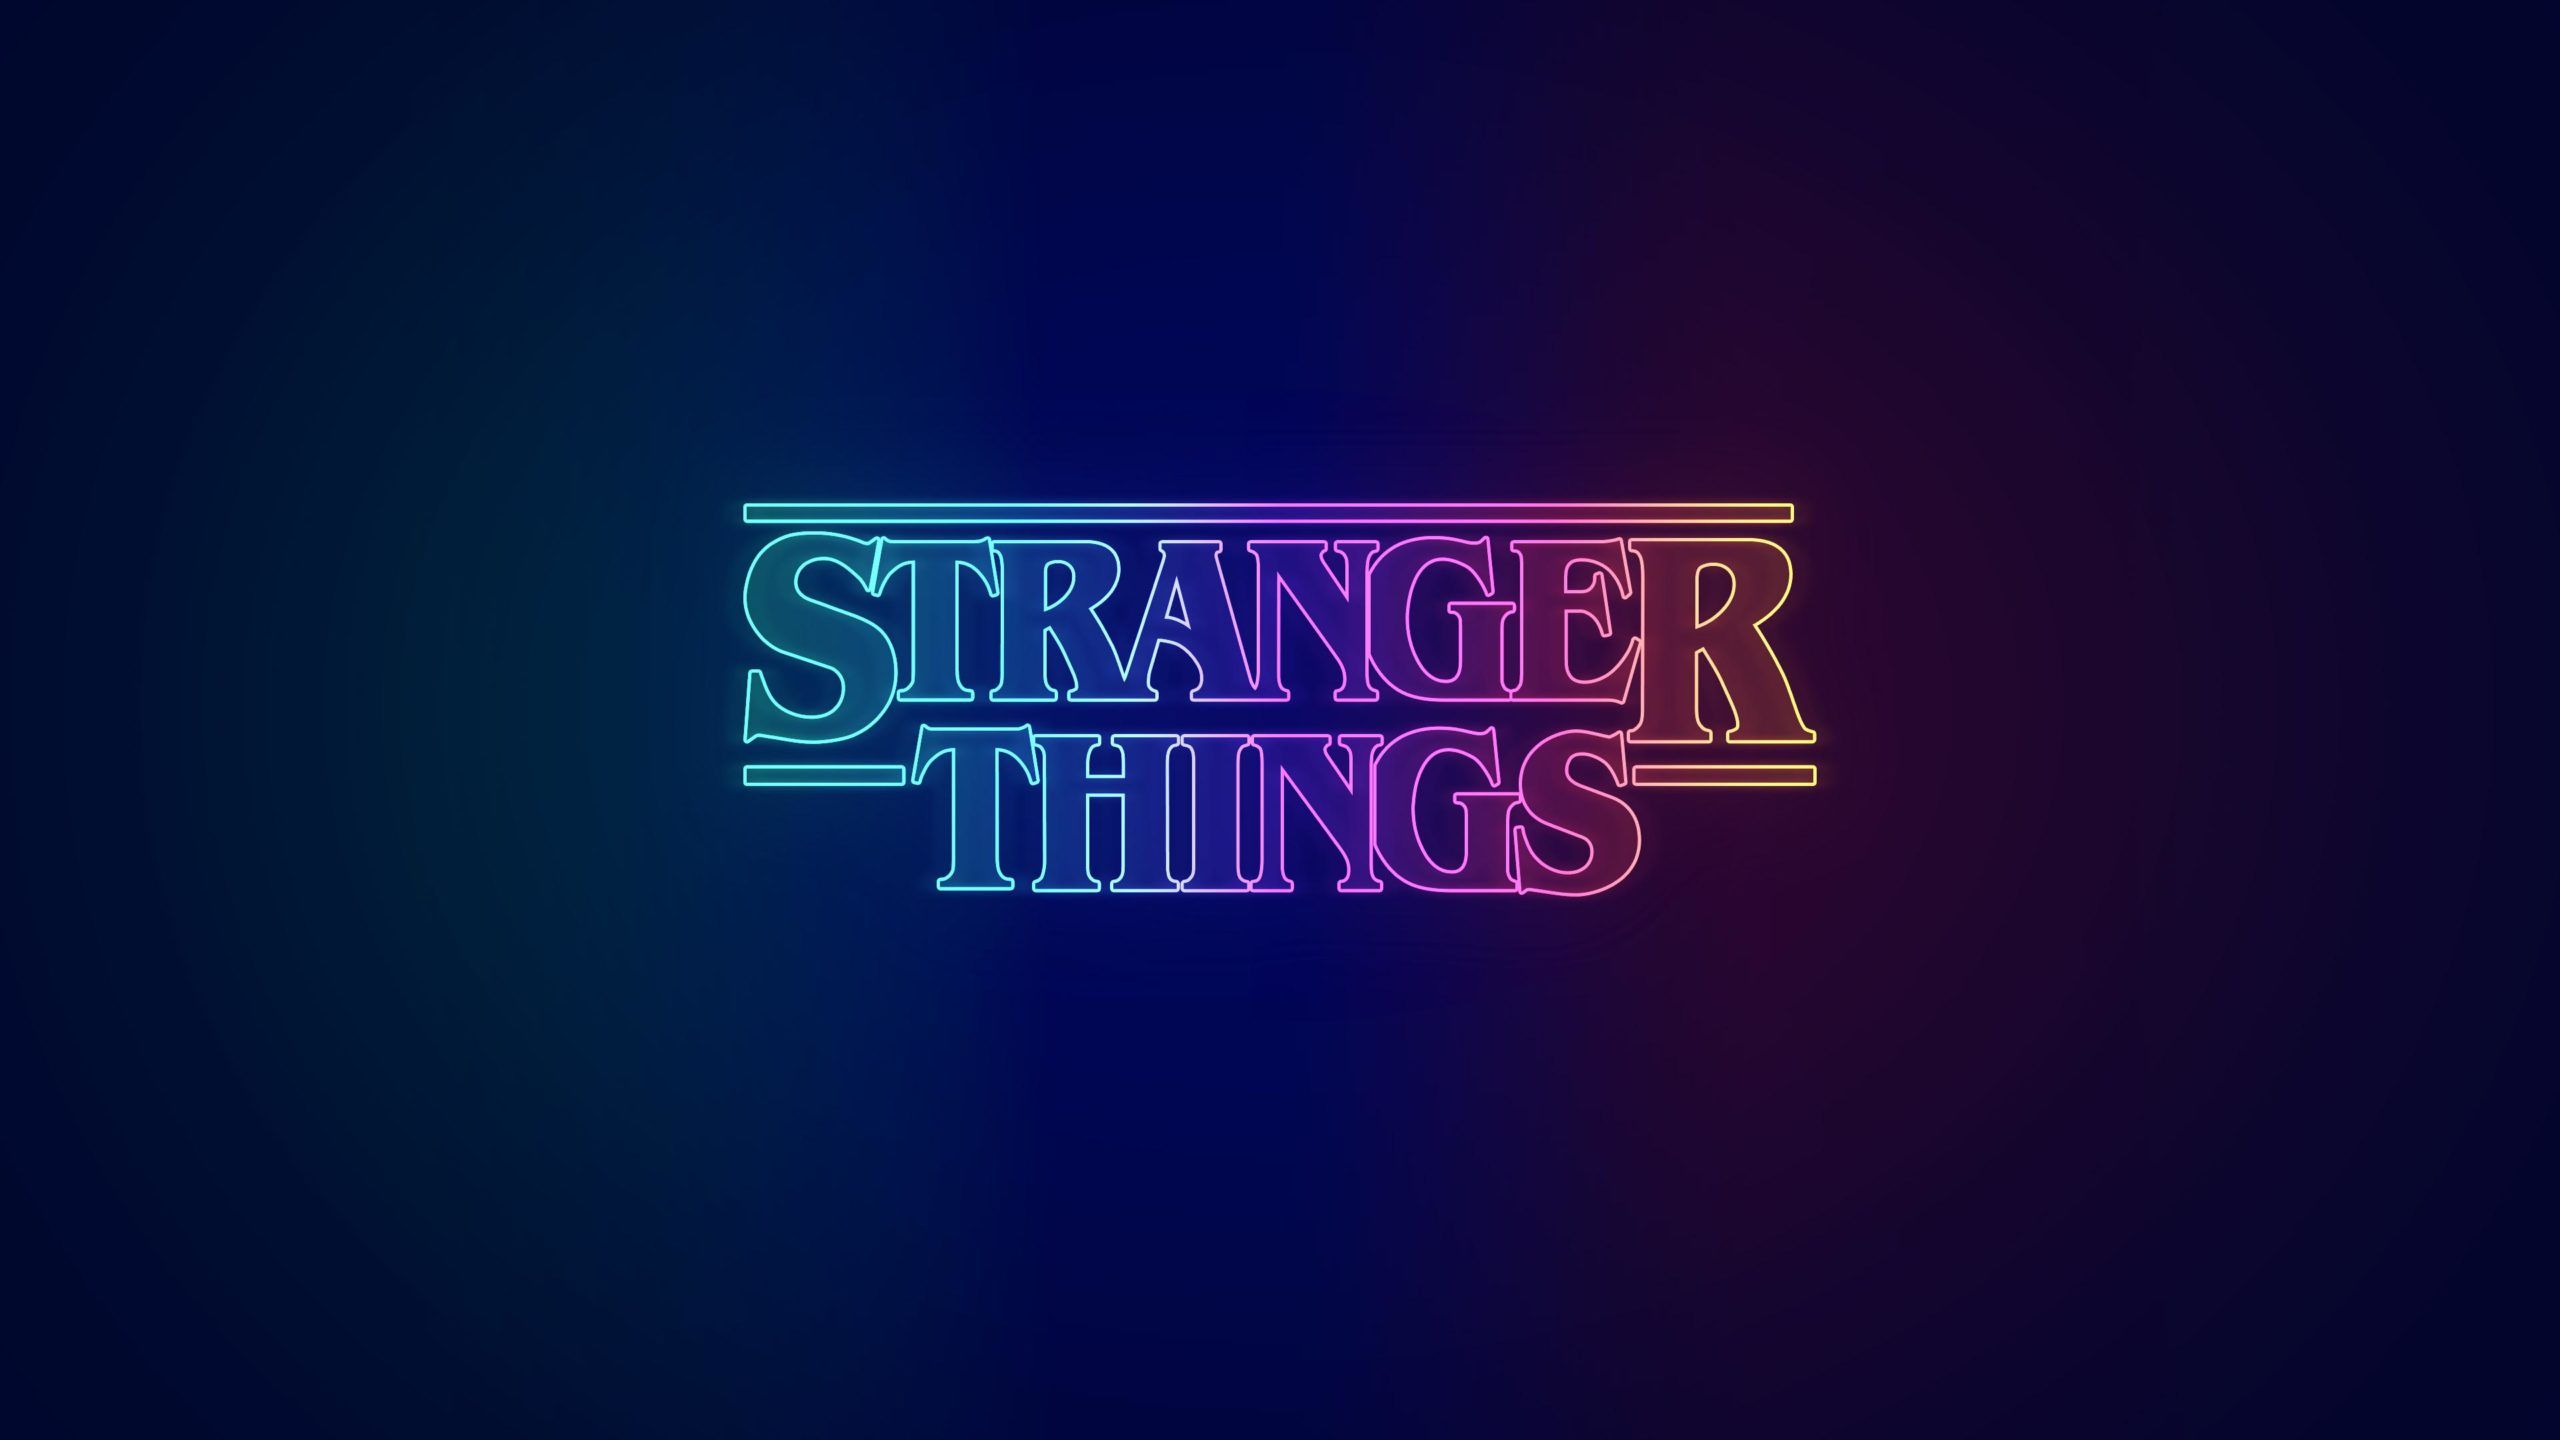 Stranger things logo wallpaper - Stranger Things